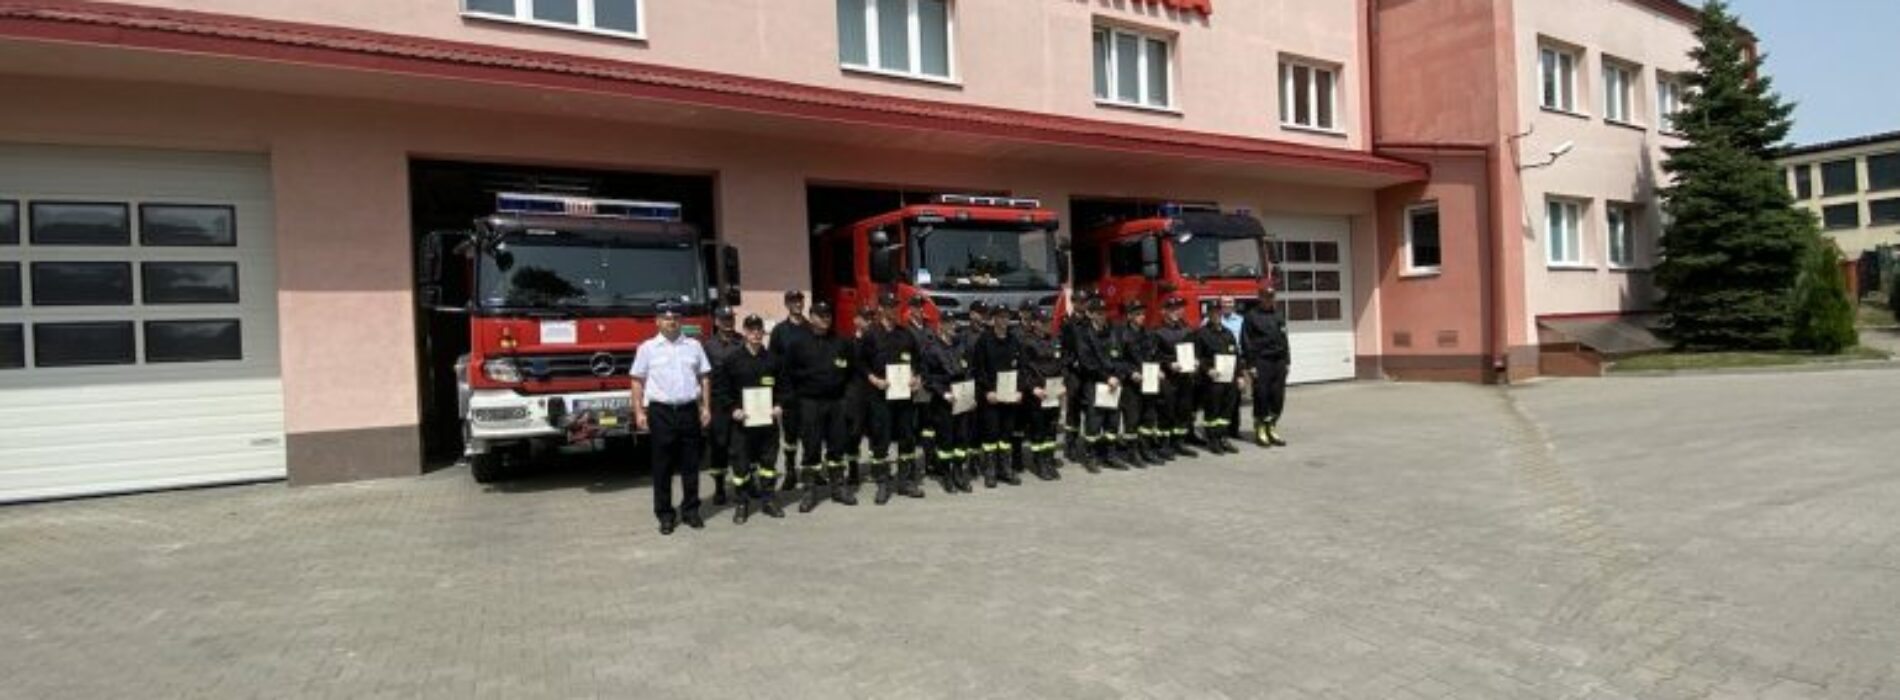 Szkolenie strażaków ochotniczych straży pożarnych powiatu chełmskiego